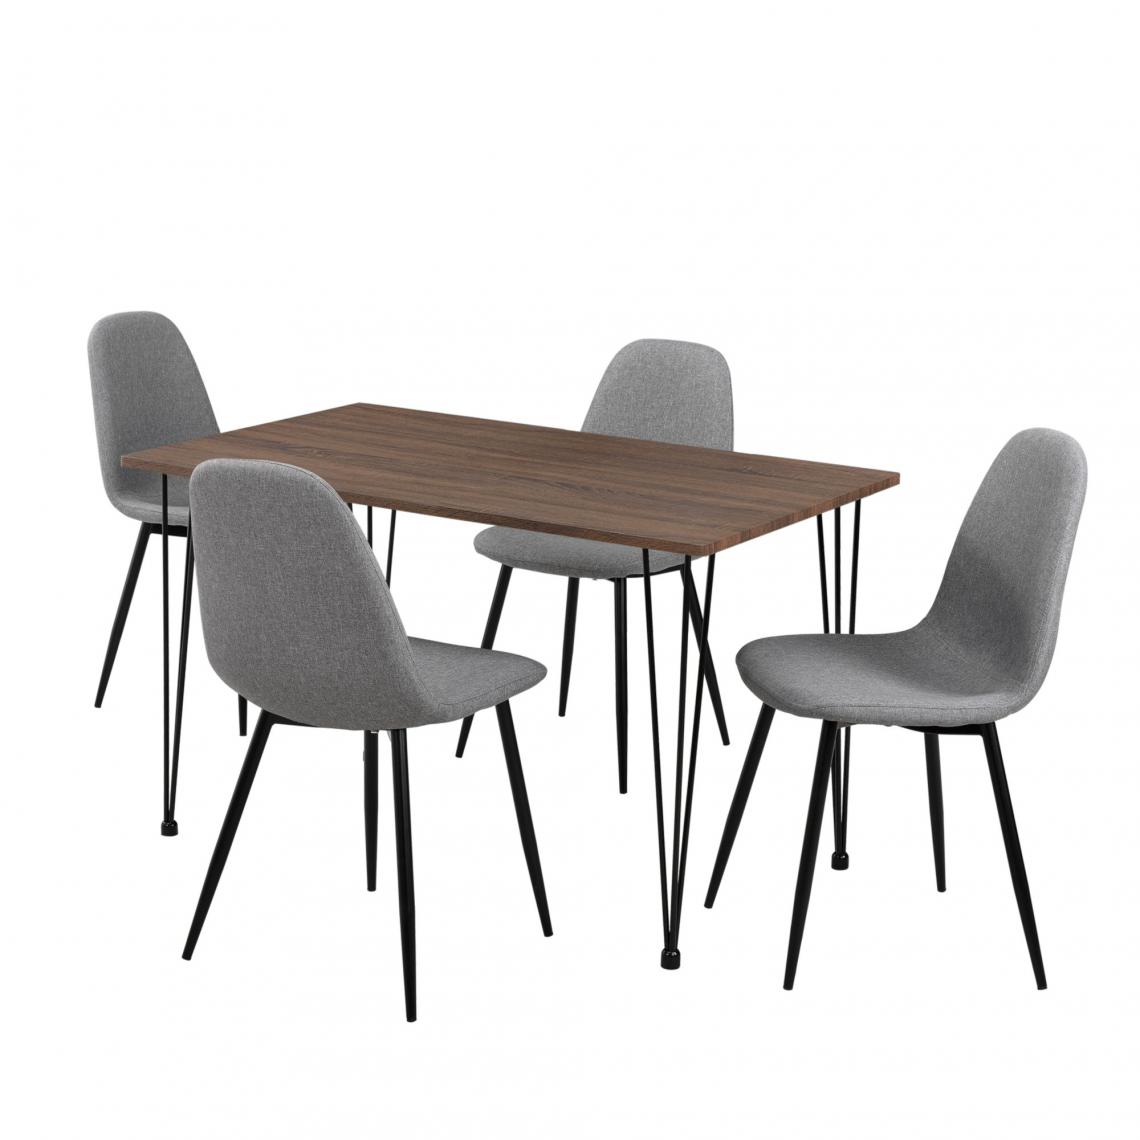 Helloshop26 - Table salle à manger aspect bois + chaise de salle à manger en kit de 4 gris 03_0003985 - Tables à manger